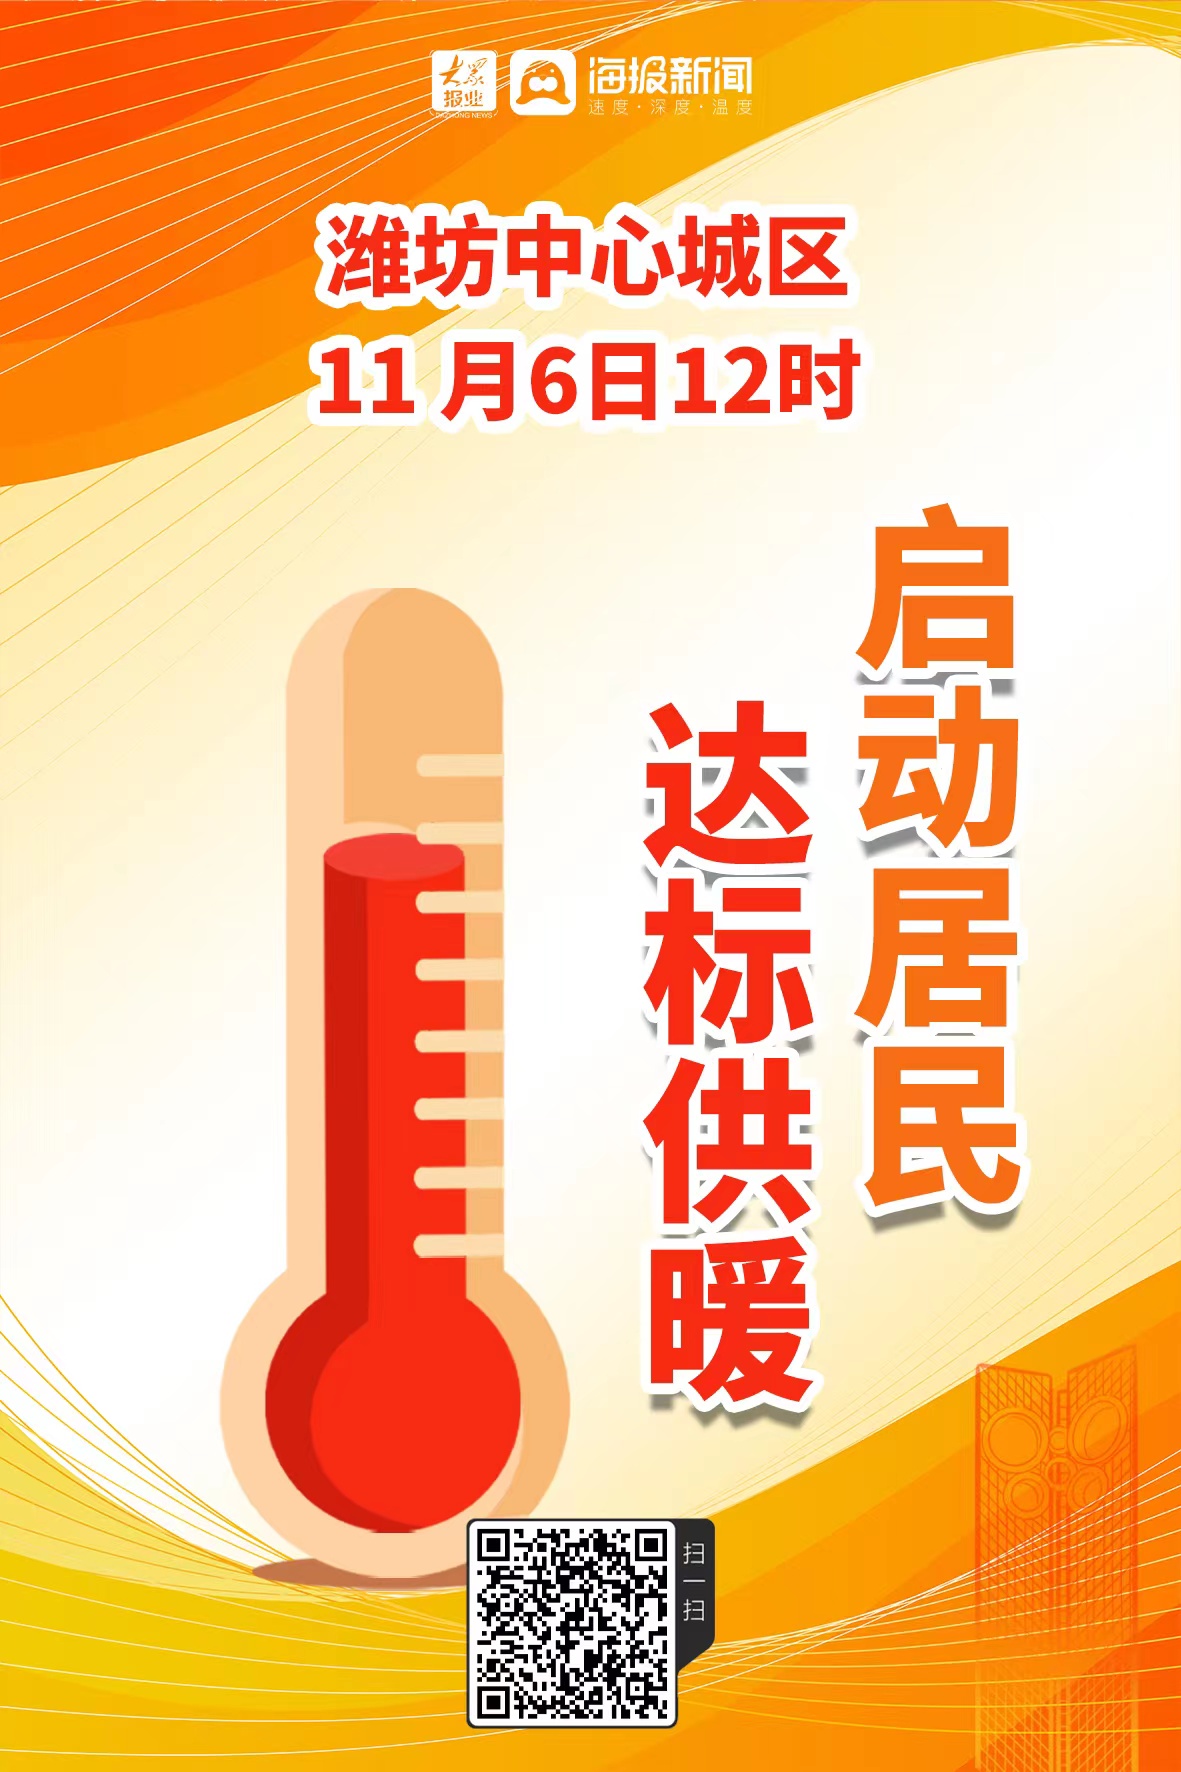 潍坊中心城区11月6日启动居民达标供暖 